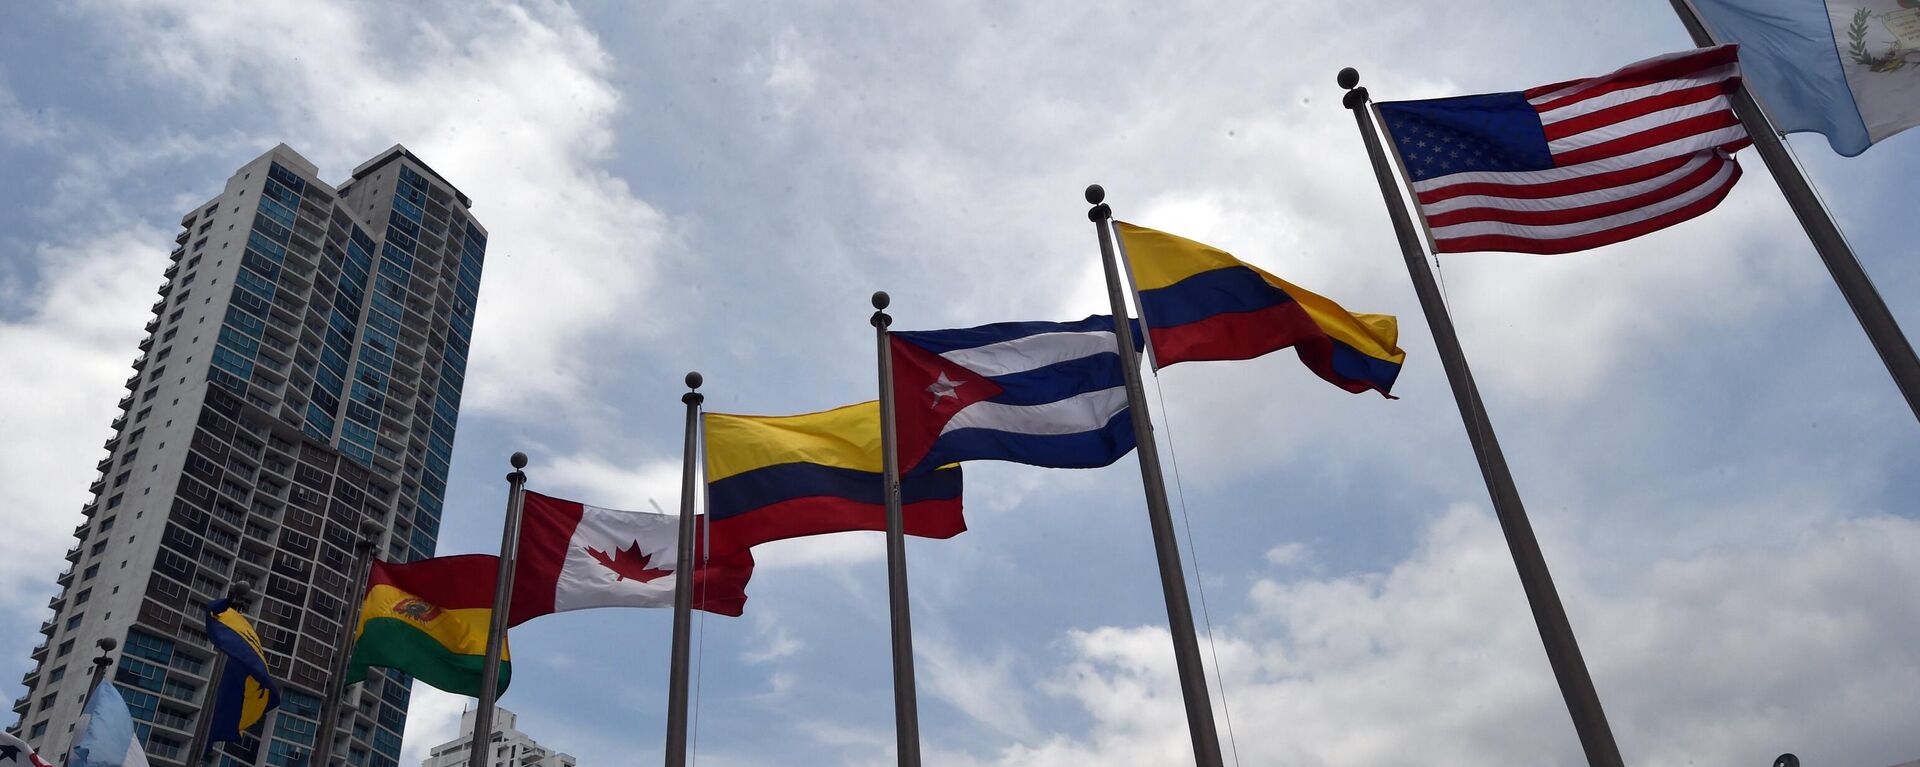 Cờ của các nước tham gia Hội nghị thượng đỉnh châu Mỹ tại Panama vào năm 2015 - Sputnik Việt Nam, 1920, 13.06.2022